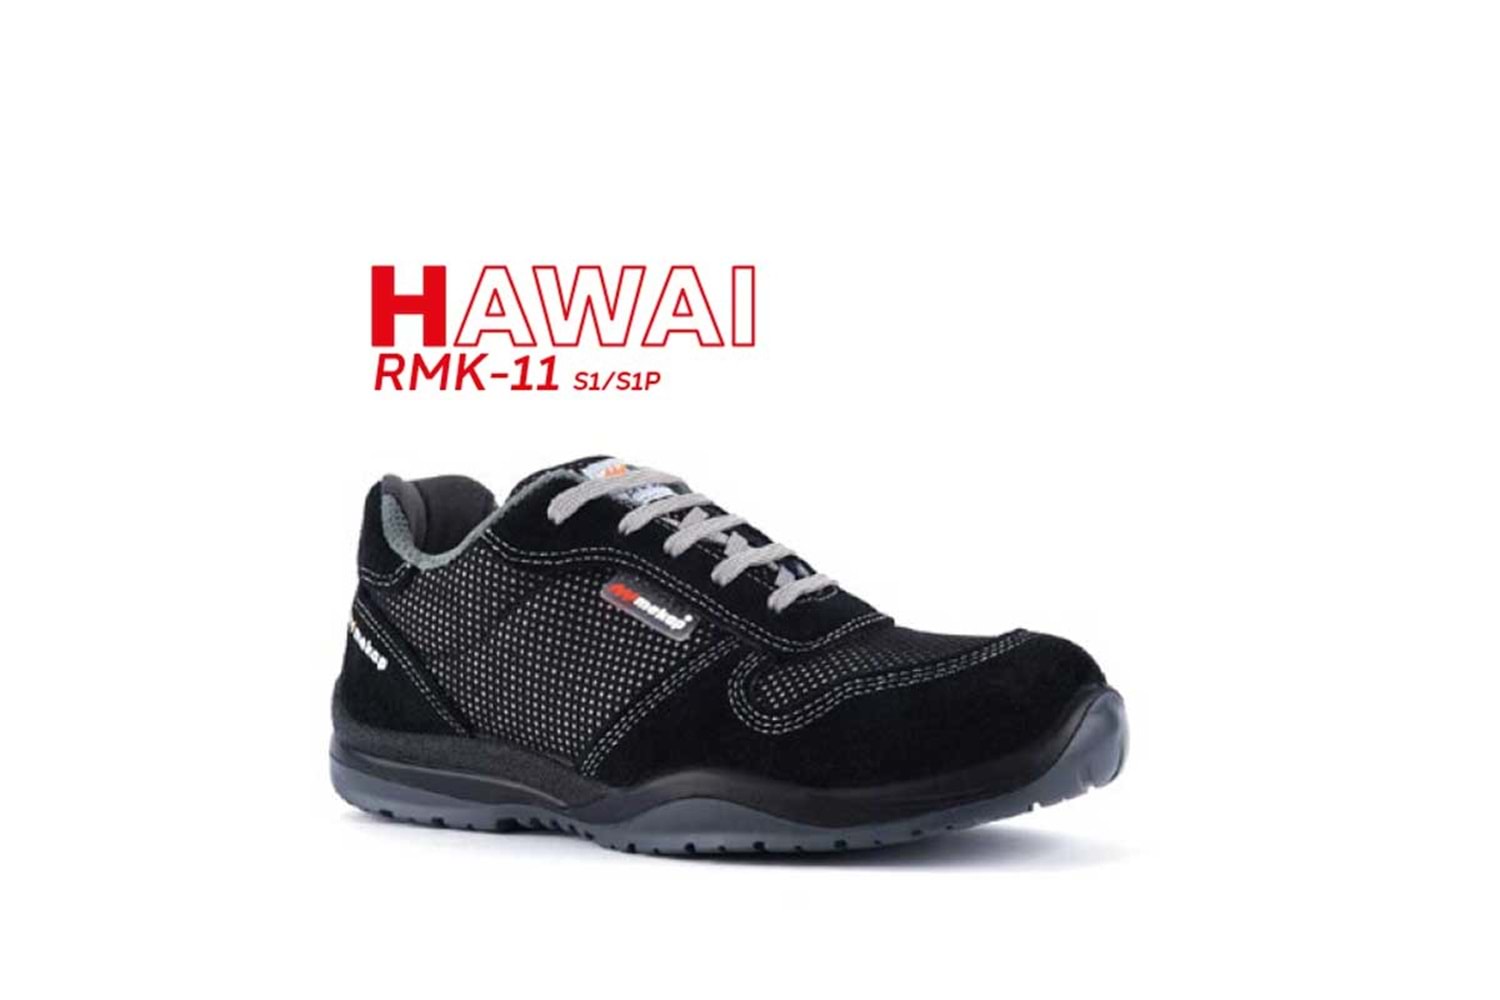 Mekap İş Ayakkabısı - Hawai Rmk-11 Black Suede S1